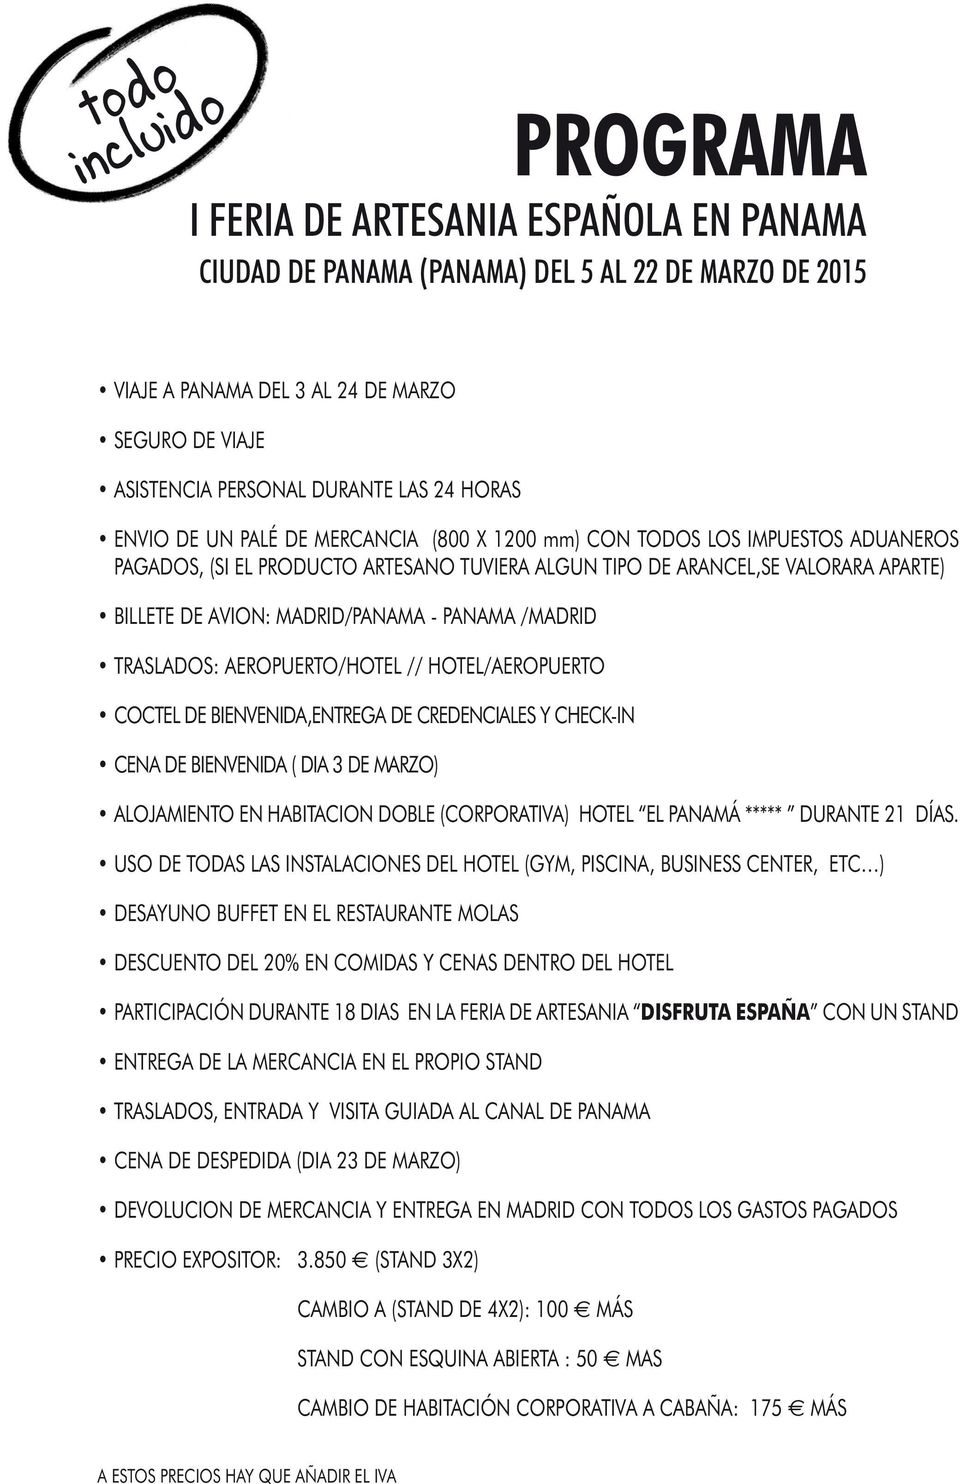 MADRID/PANAMA - PANAMA /MADRID TRASLADOS: AEROPUERTO/HOTEL // HOTEL/AEROPUERTO COCTEL DE BIENVENIDA,ENTREGA DE CREDENCIALES Y CHECK-IN CENA DE BIENVENIDA ( DIA 3 DE MARZO) ALOJAMIENTO EN HABITACION